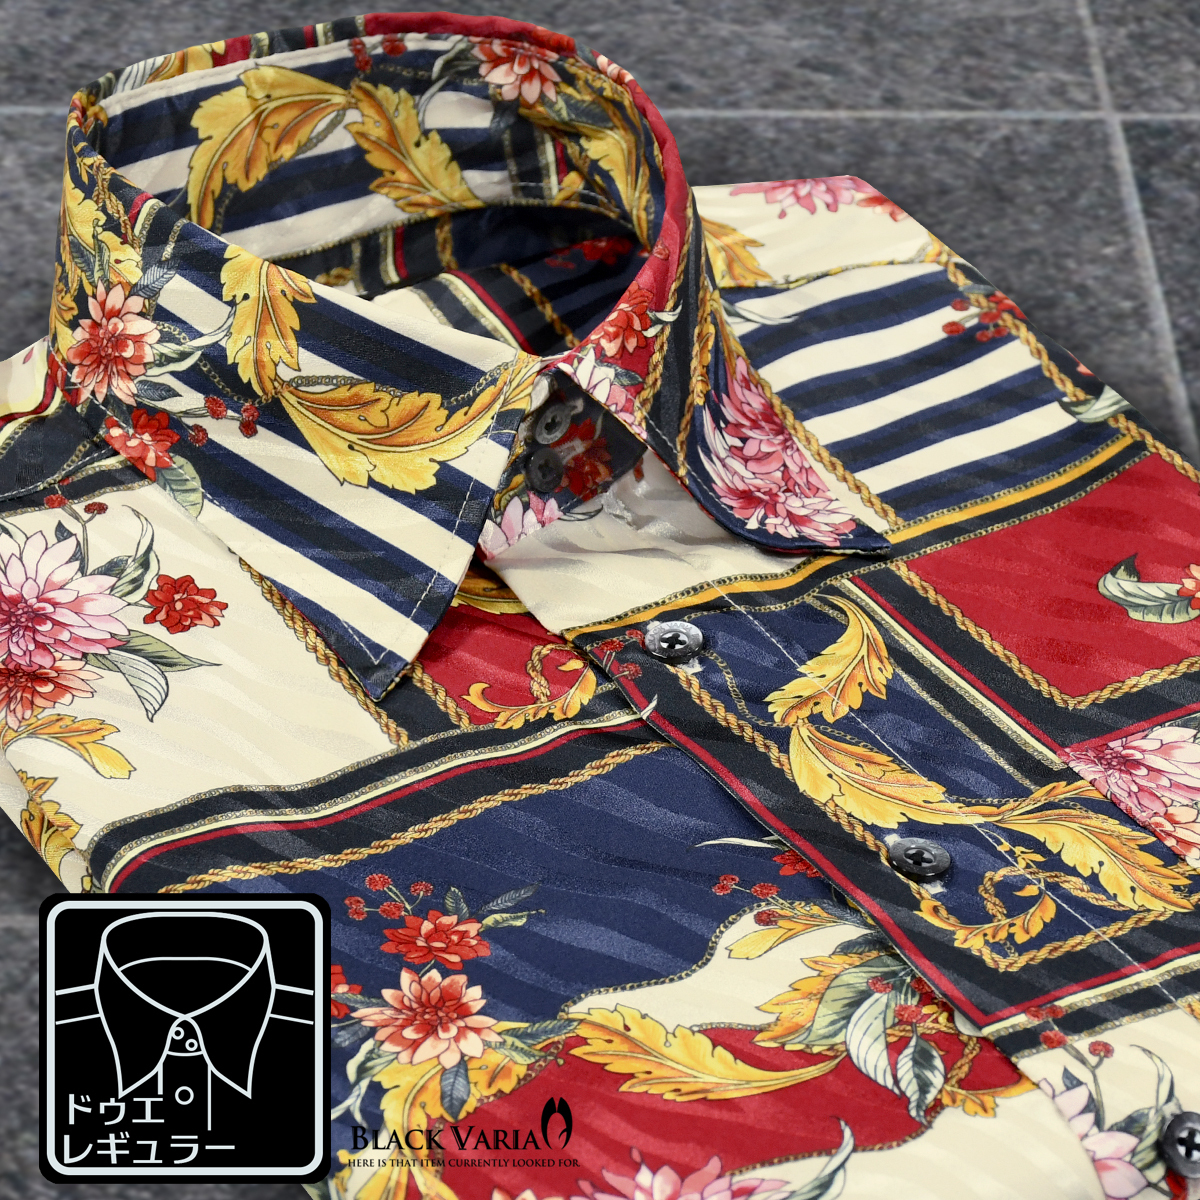 6#a201350-beny ブラックバリア ドゥエボットーニ スカーフ花柄[レギュラーカラー]ジャガード ドレスシャツ メンズ(ネイビー紺レッド赤) M